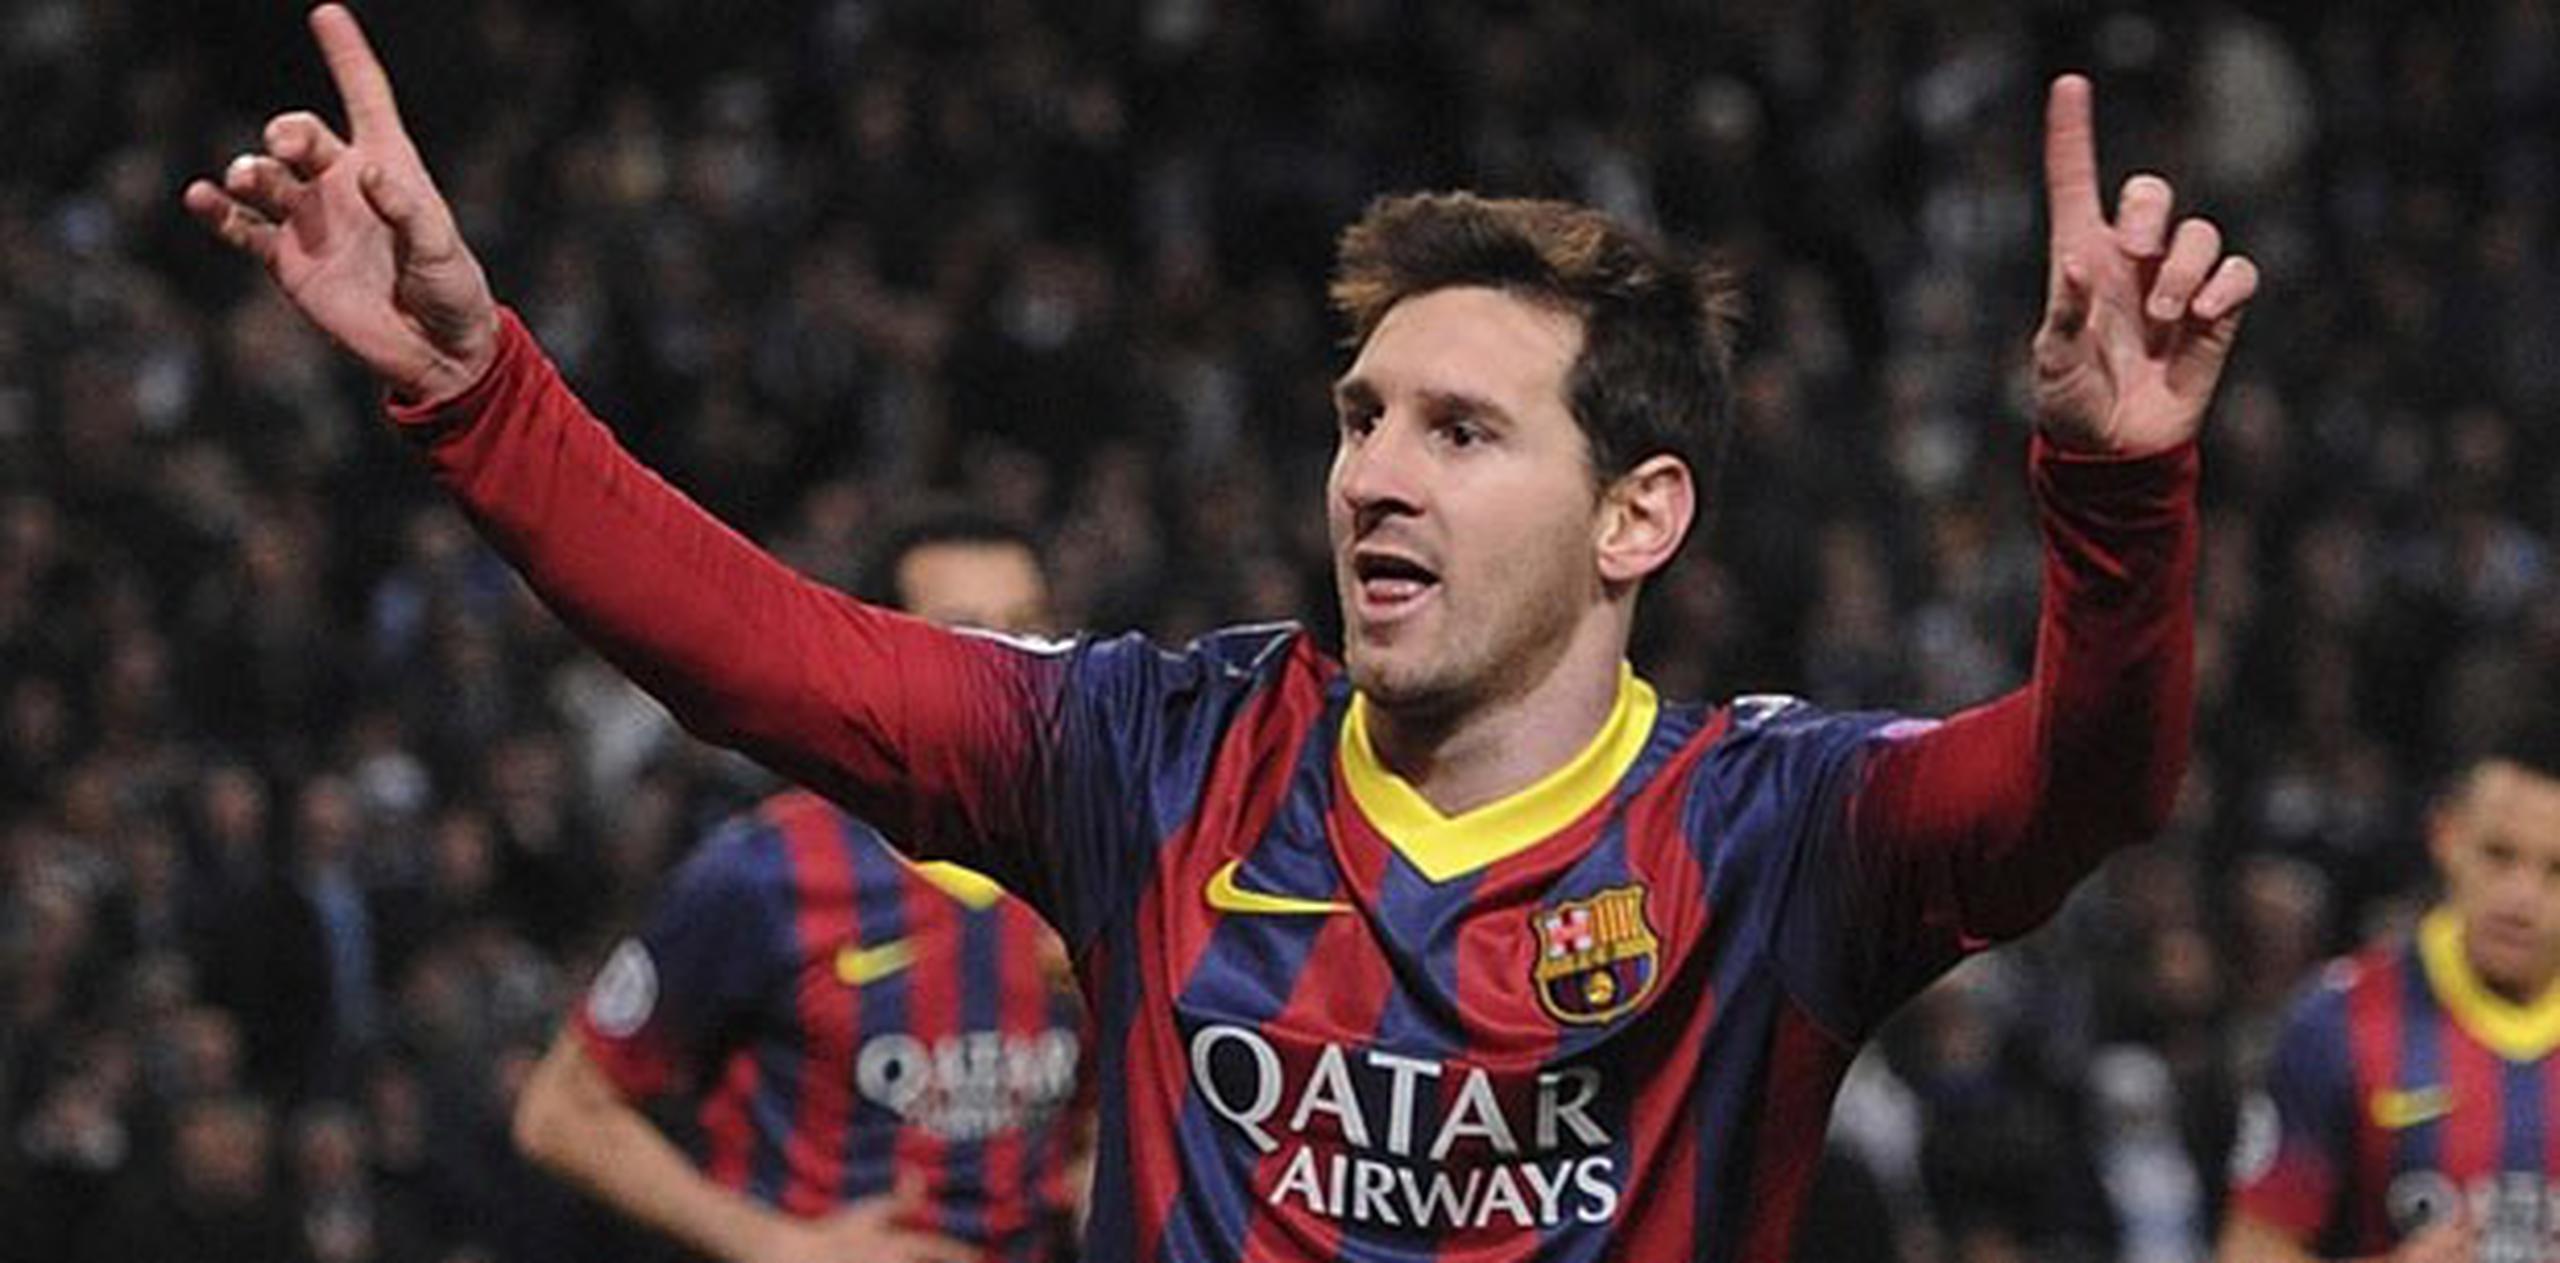 El trofeo será entregado por el exentrenador barcelonista Carles Rexach, uno de los técnicos que apostaron por Leo Messi cuando éste llegó al Barcelona con doce años. (Archivo)